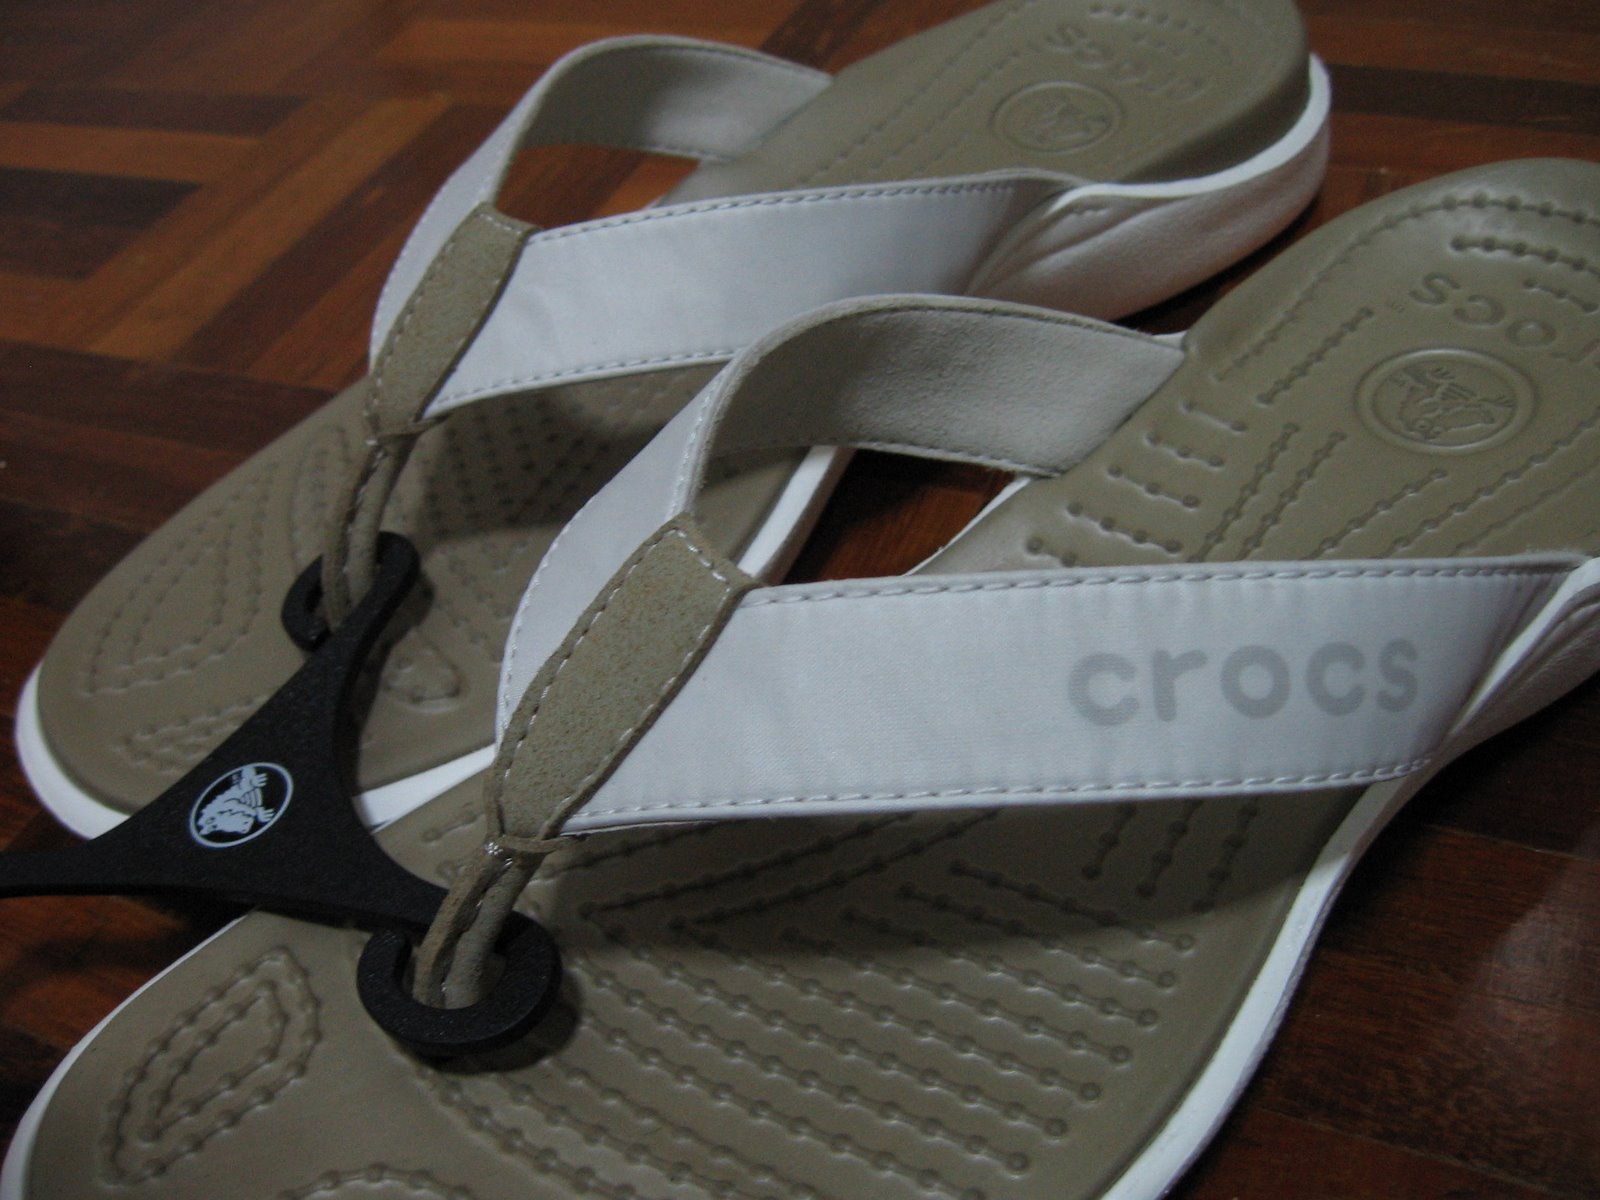 [CROC-Shoe.JPG]